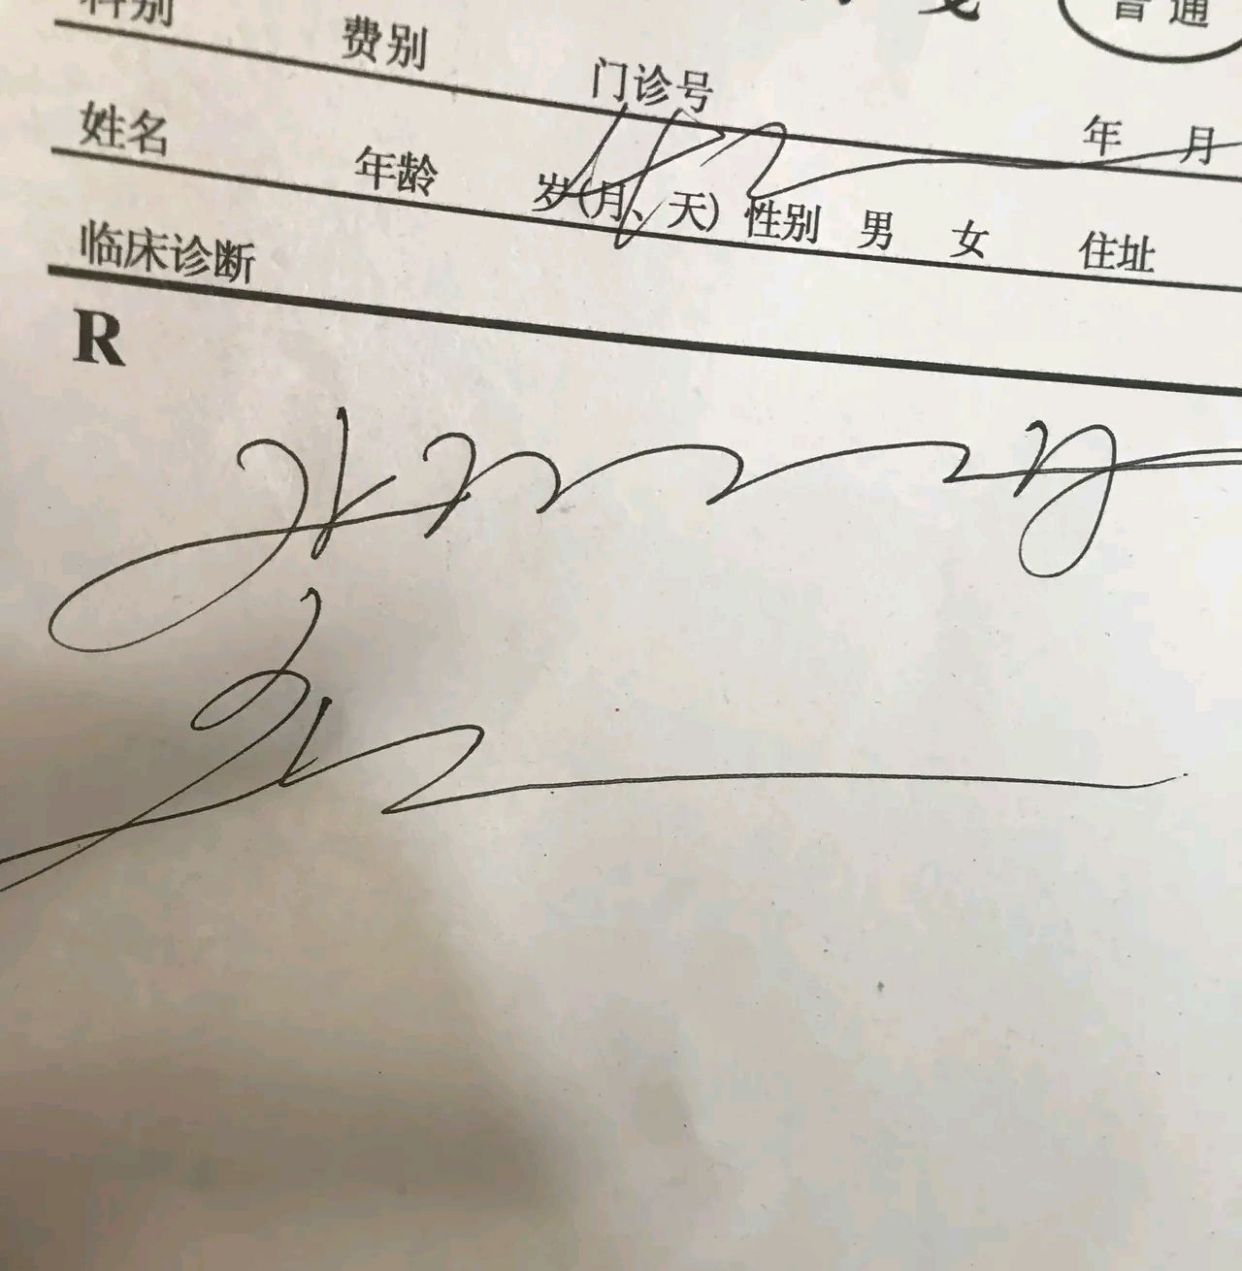 郑州某诊所,医生给开药单子,这字看了一天没有明白是什么意思?